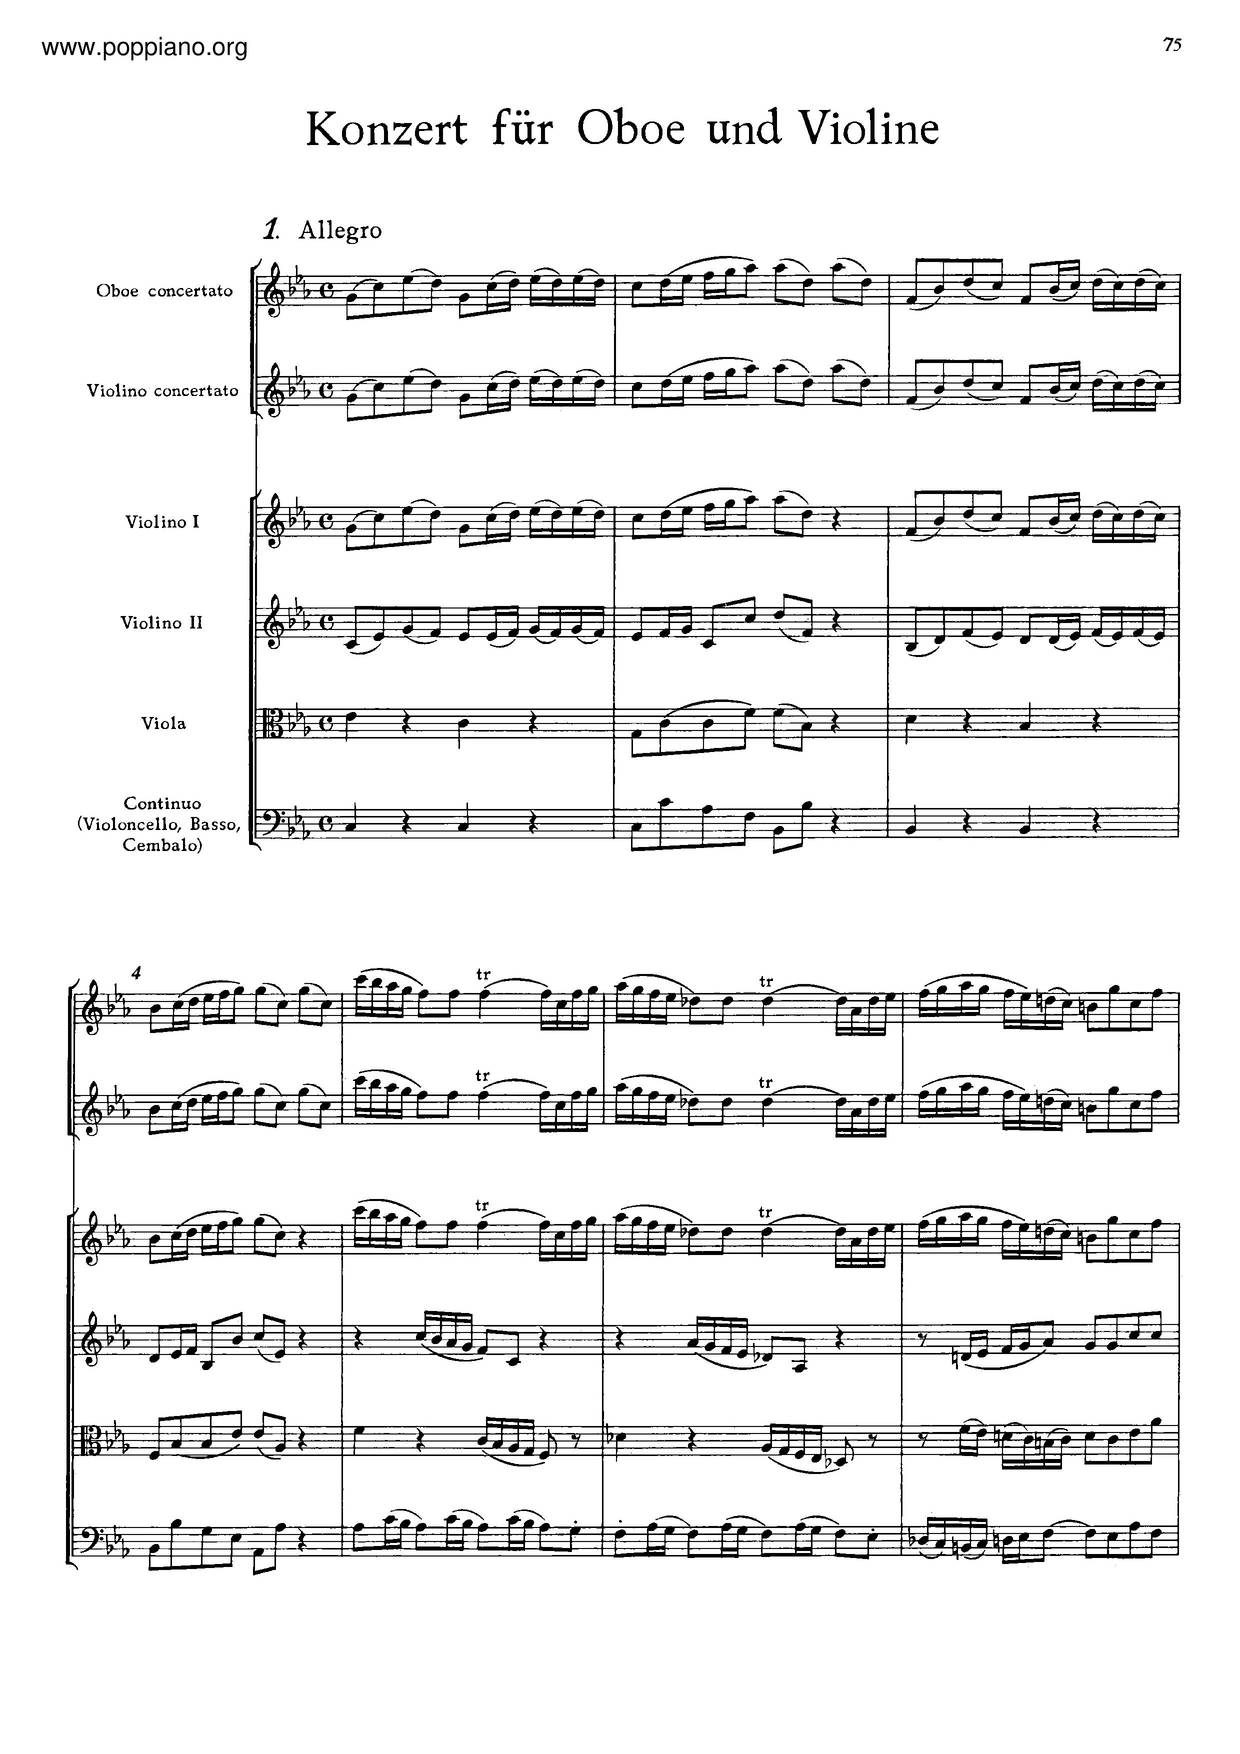 Concerto For Violin And Oboe In C Minor, BWV 1060R Score